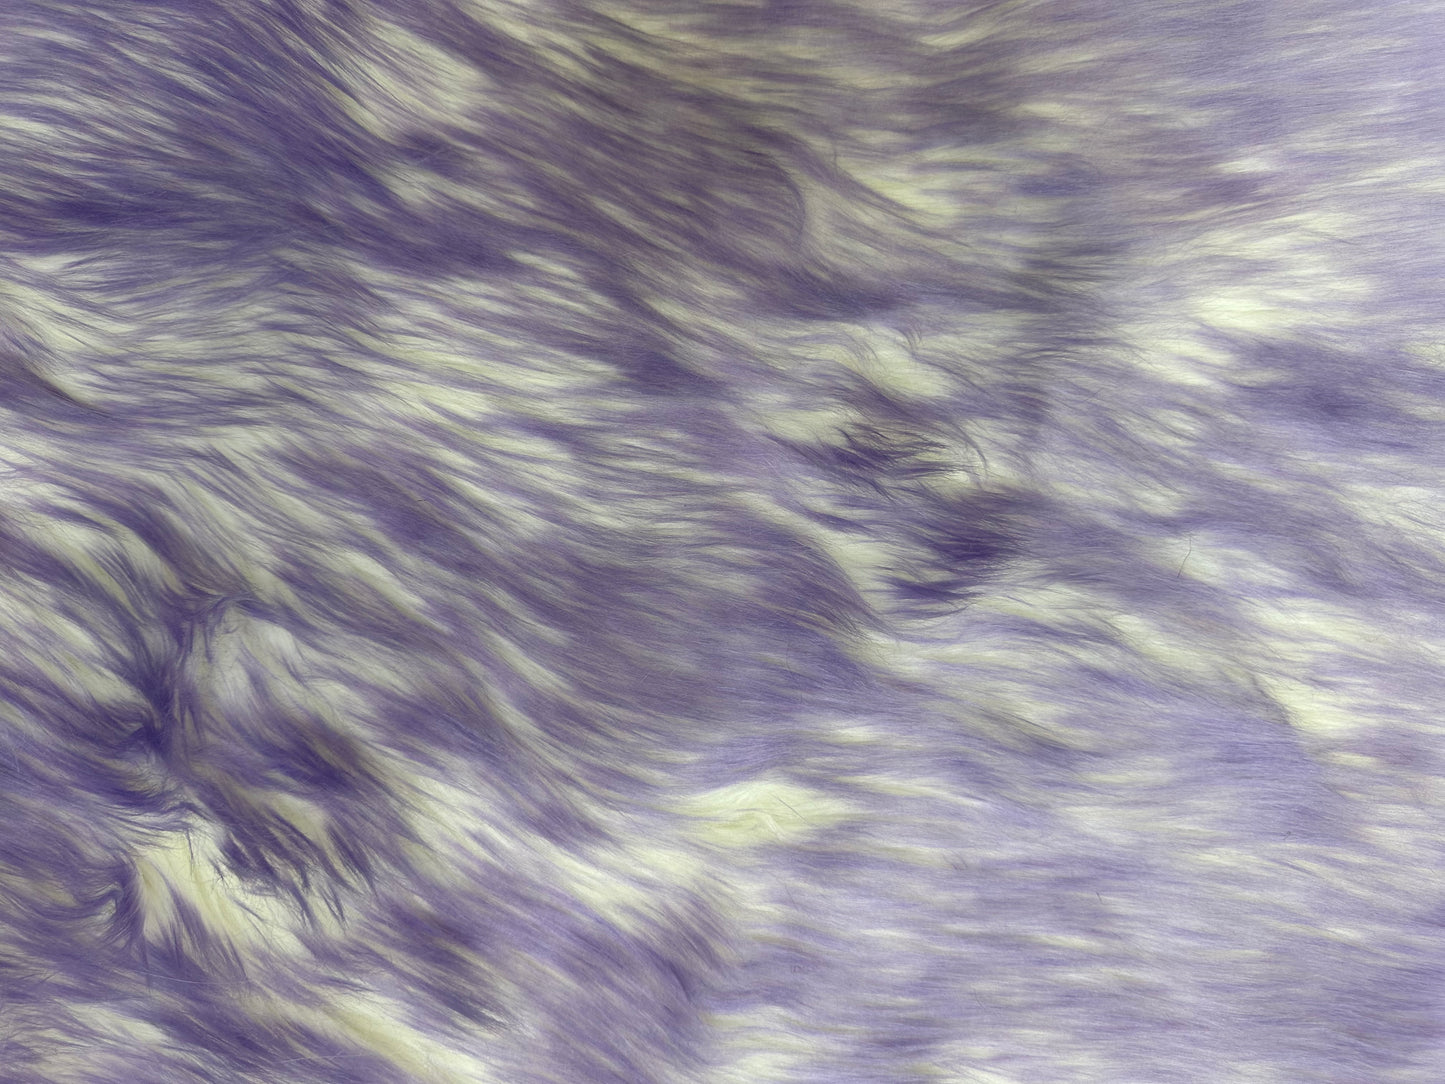 Lavender  - Faux Fur Fabric